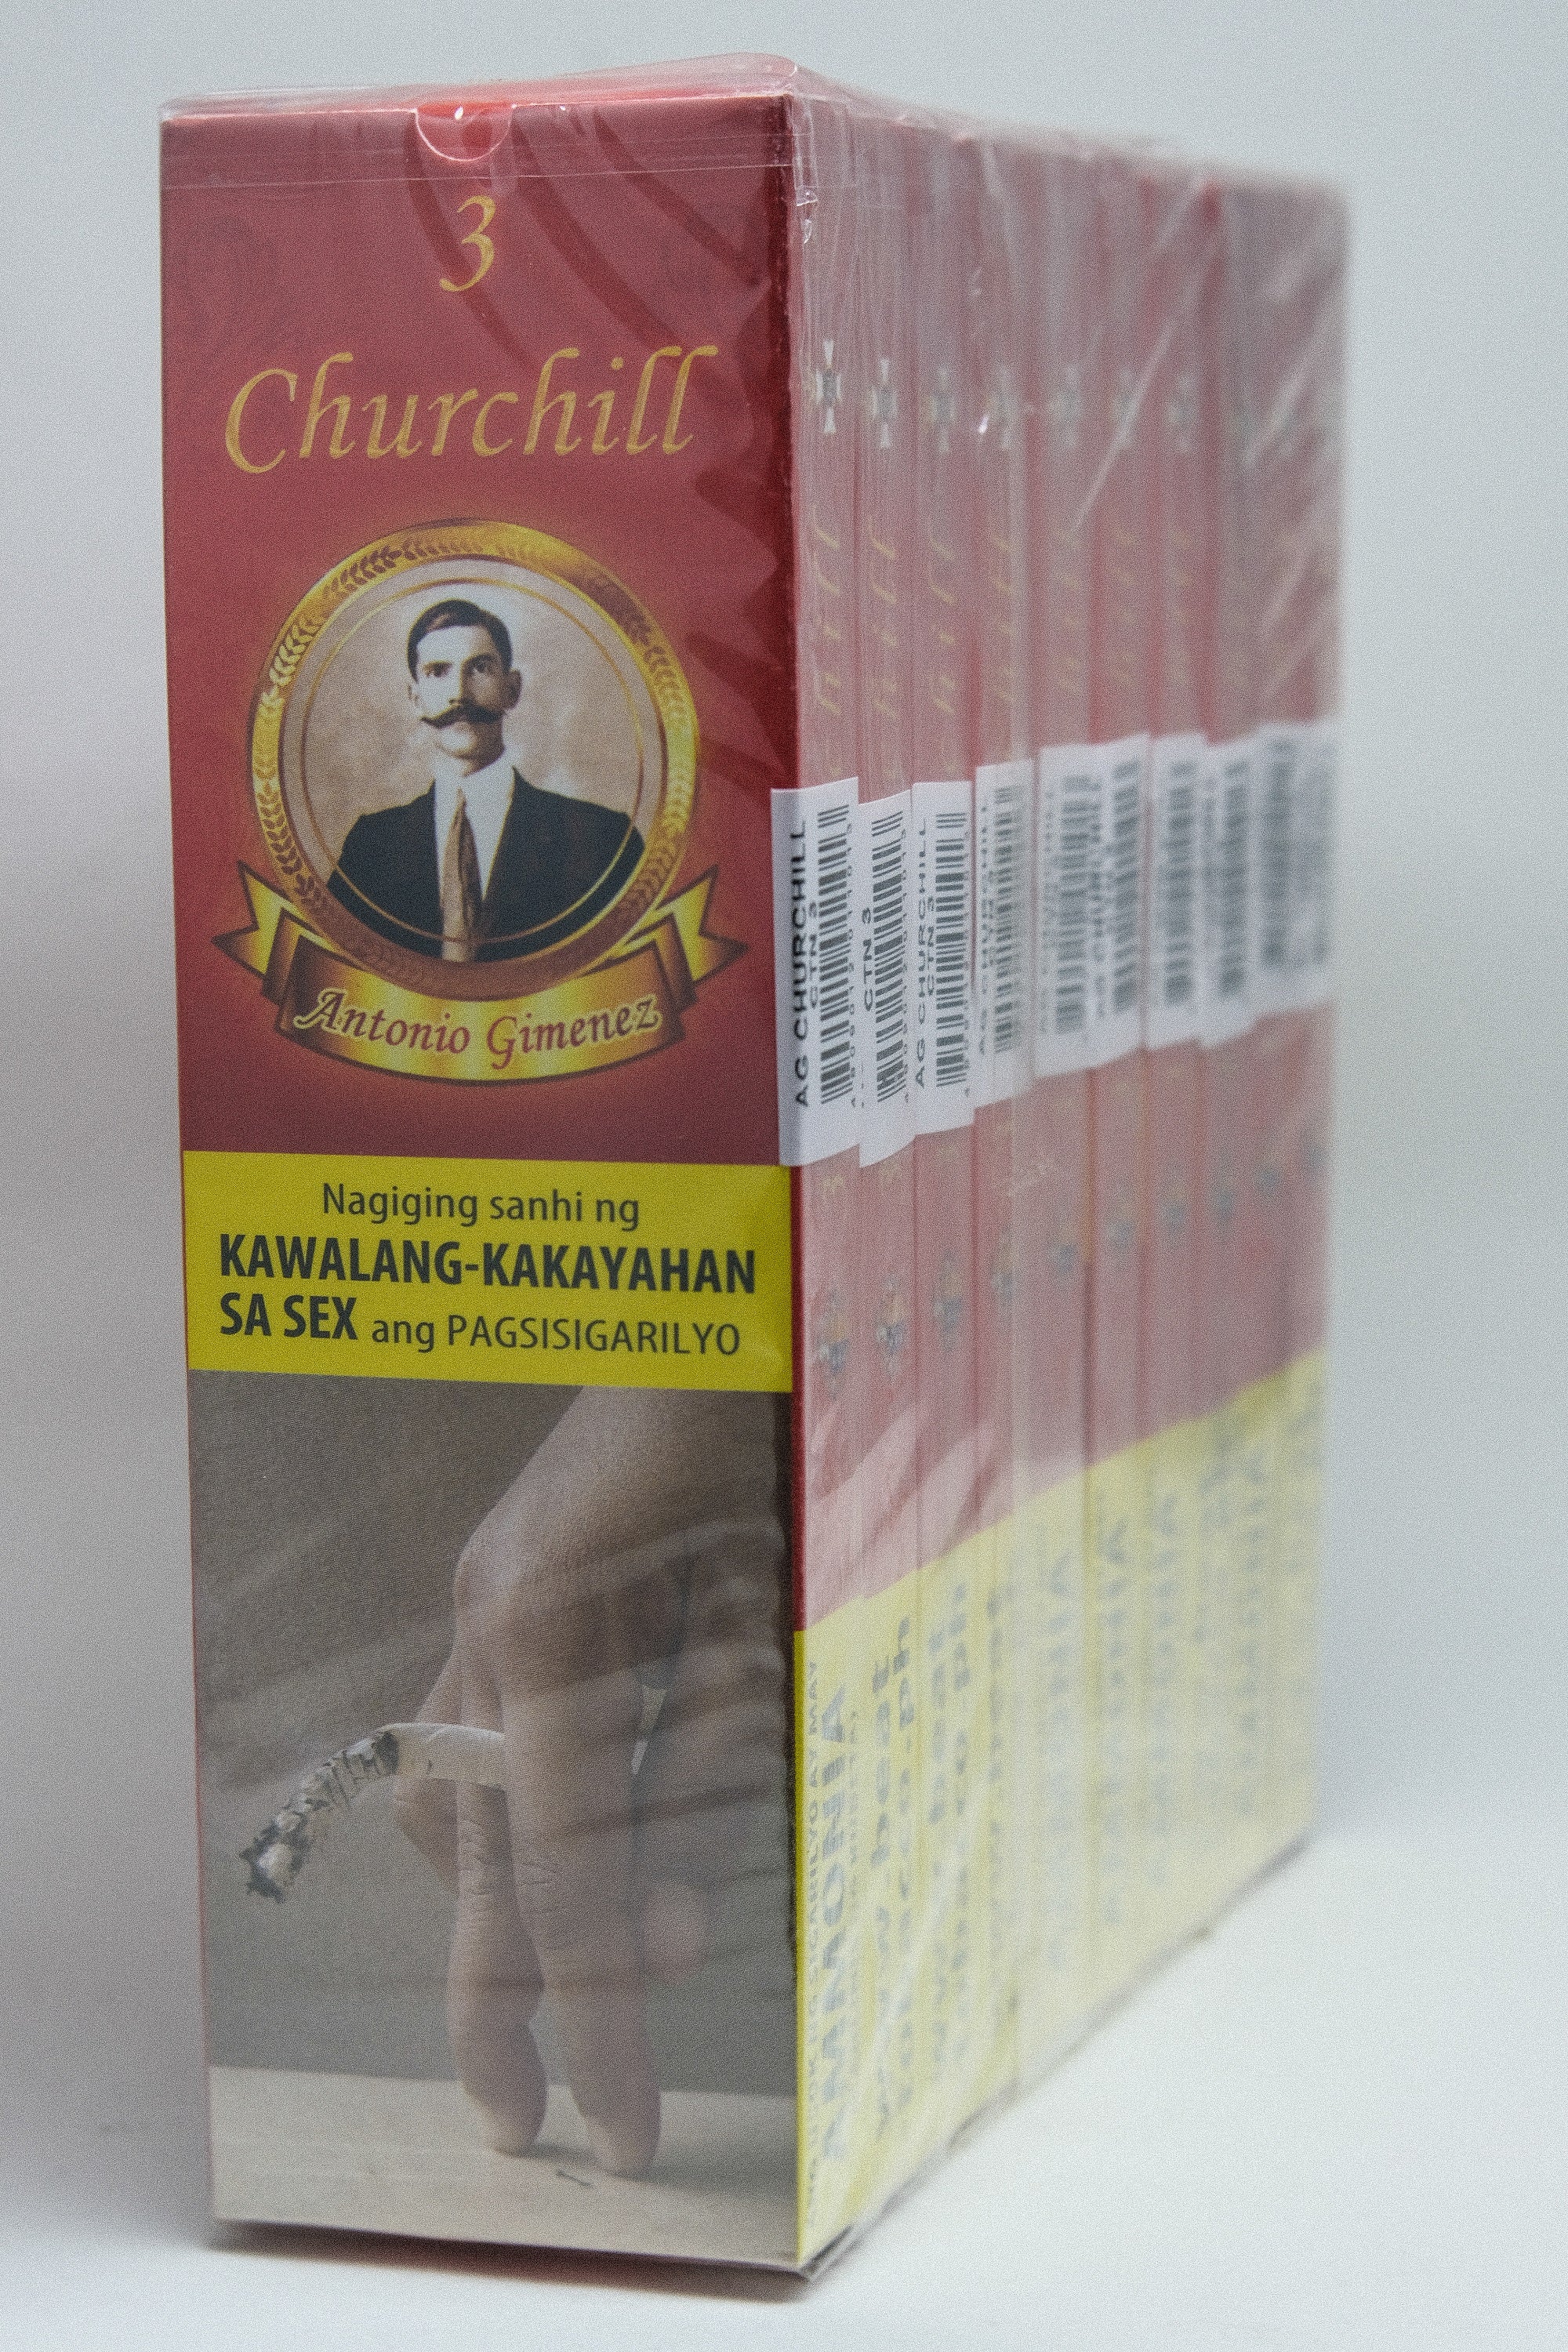 Antonio Gimenez Churchill 7 x 47